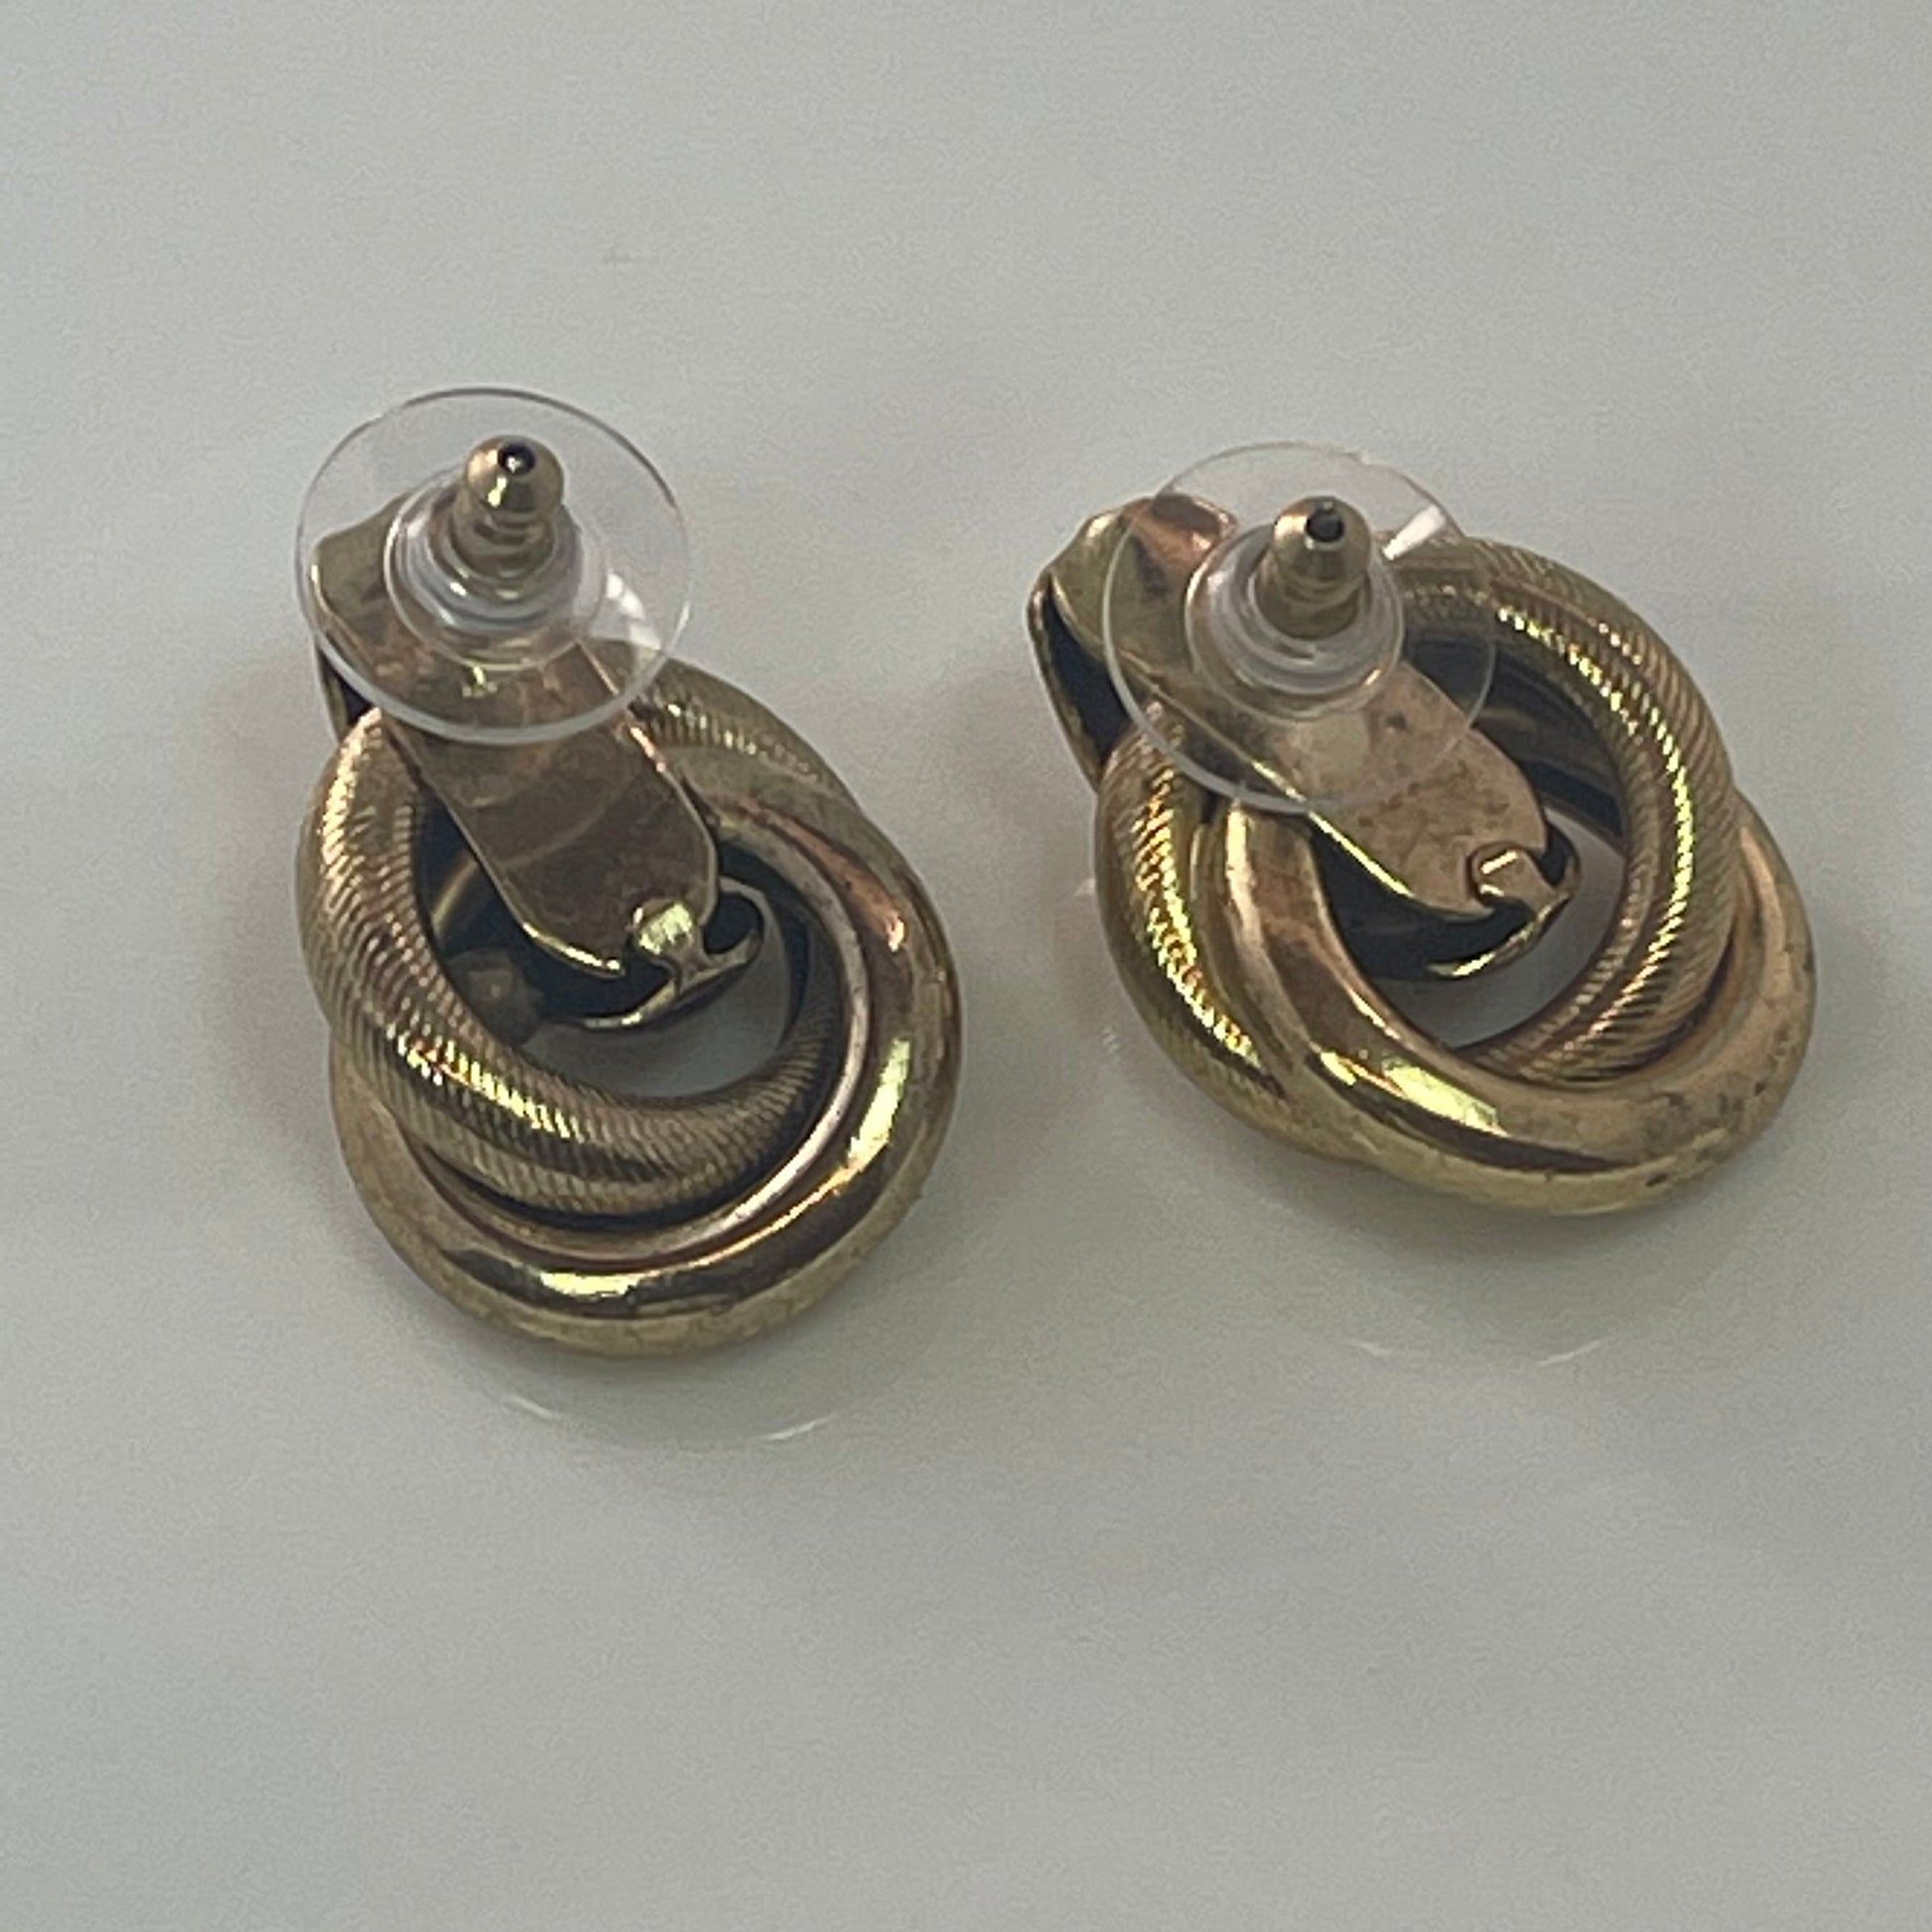 Vintage Earrings Oscar de la Renta Antique Gold Tone Pierced Earrings for Women OSE-738-Y